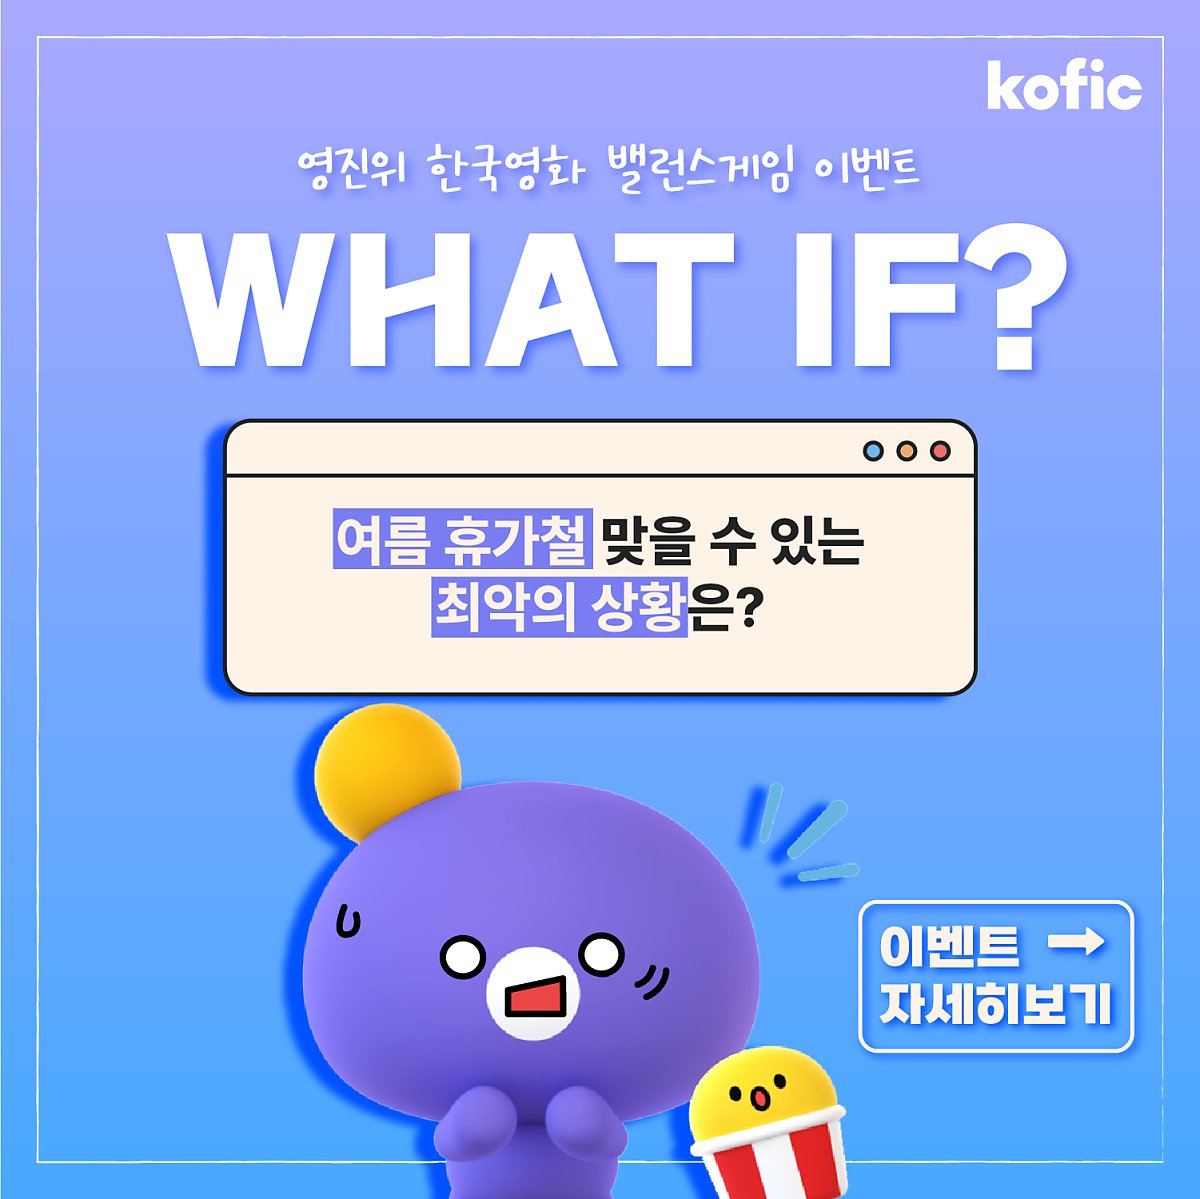 [이벤트] 😲WHAT IF? 영진위 한국영화 밸런스게임 이벤트 🎁